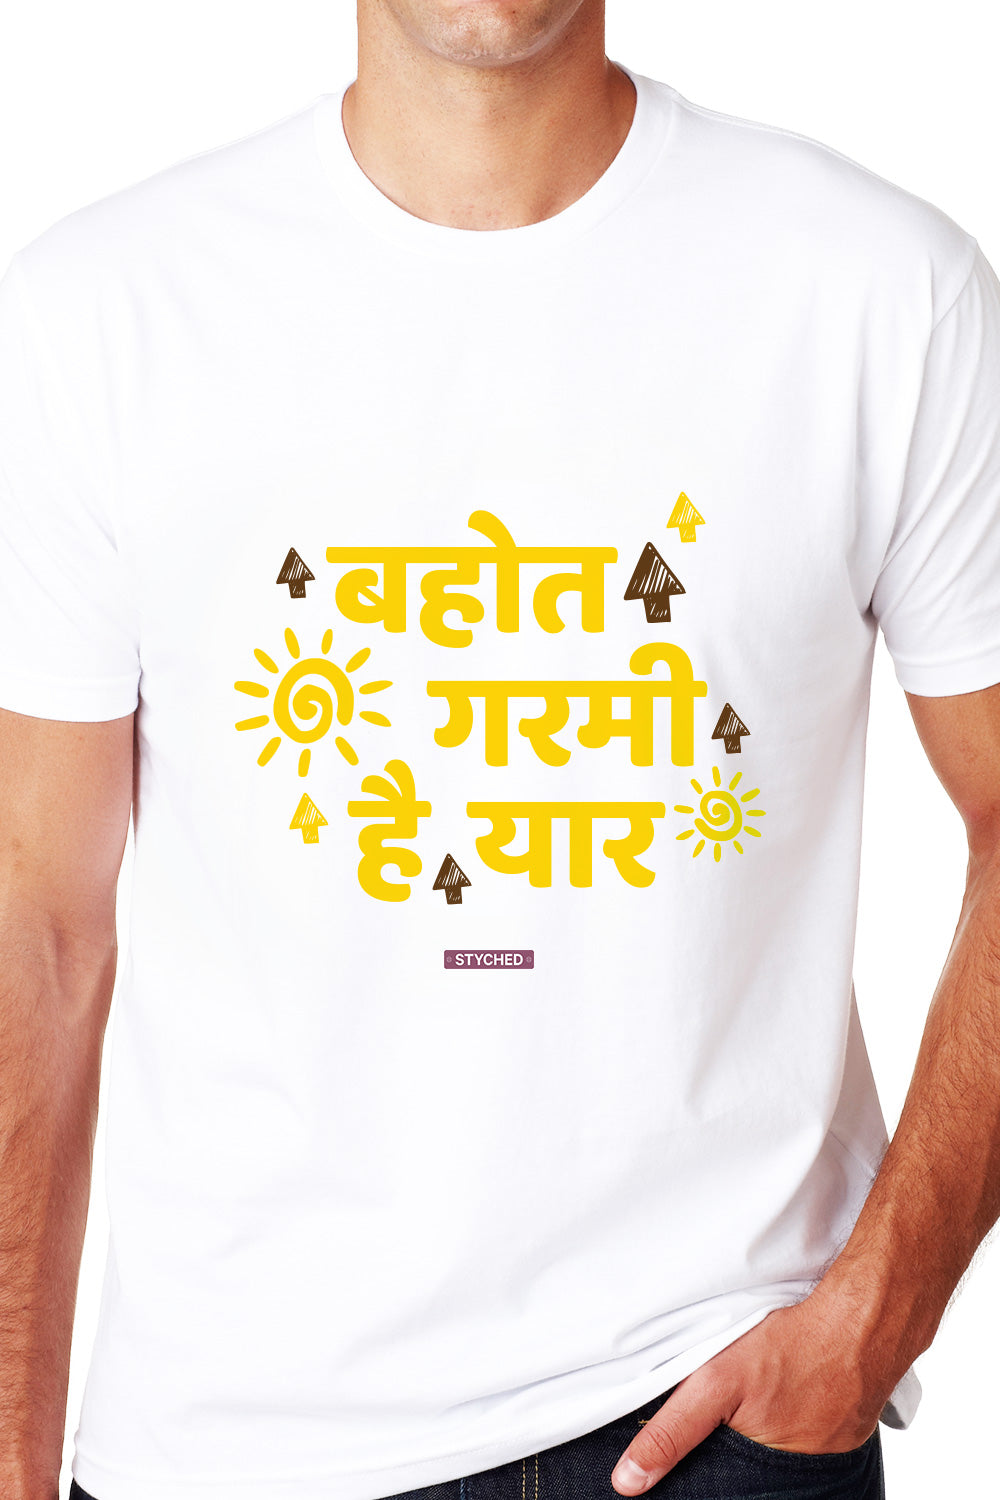 Bohot Garmi Hai! A Cool TShirt for the Hot Summers